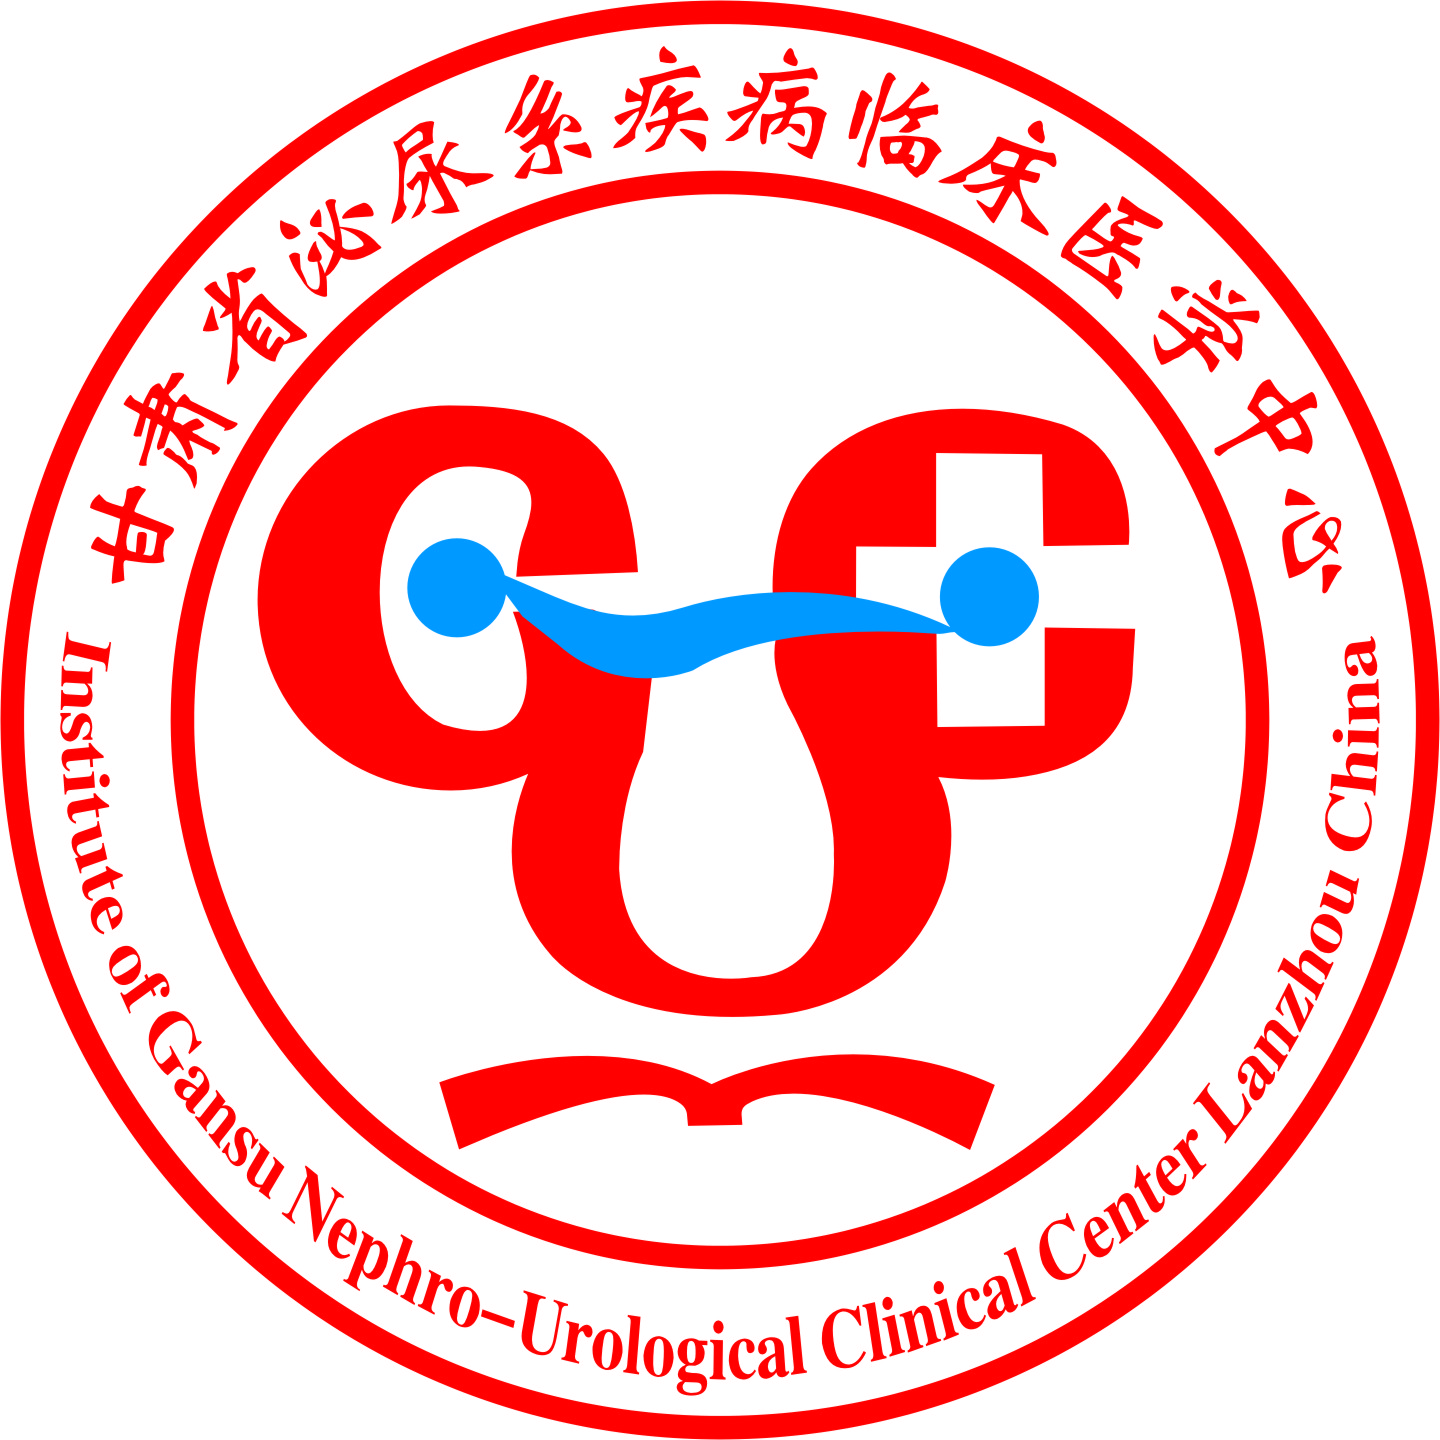 Institute of Gansu Nephro-Urological Clinical Center